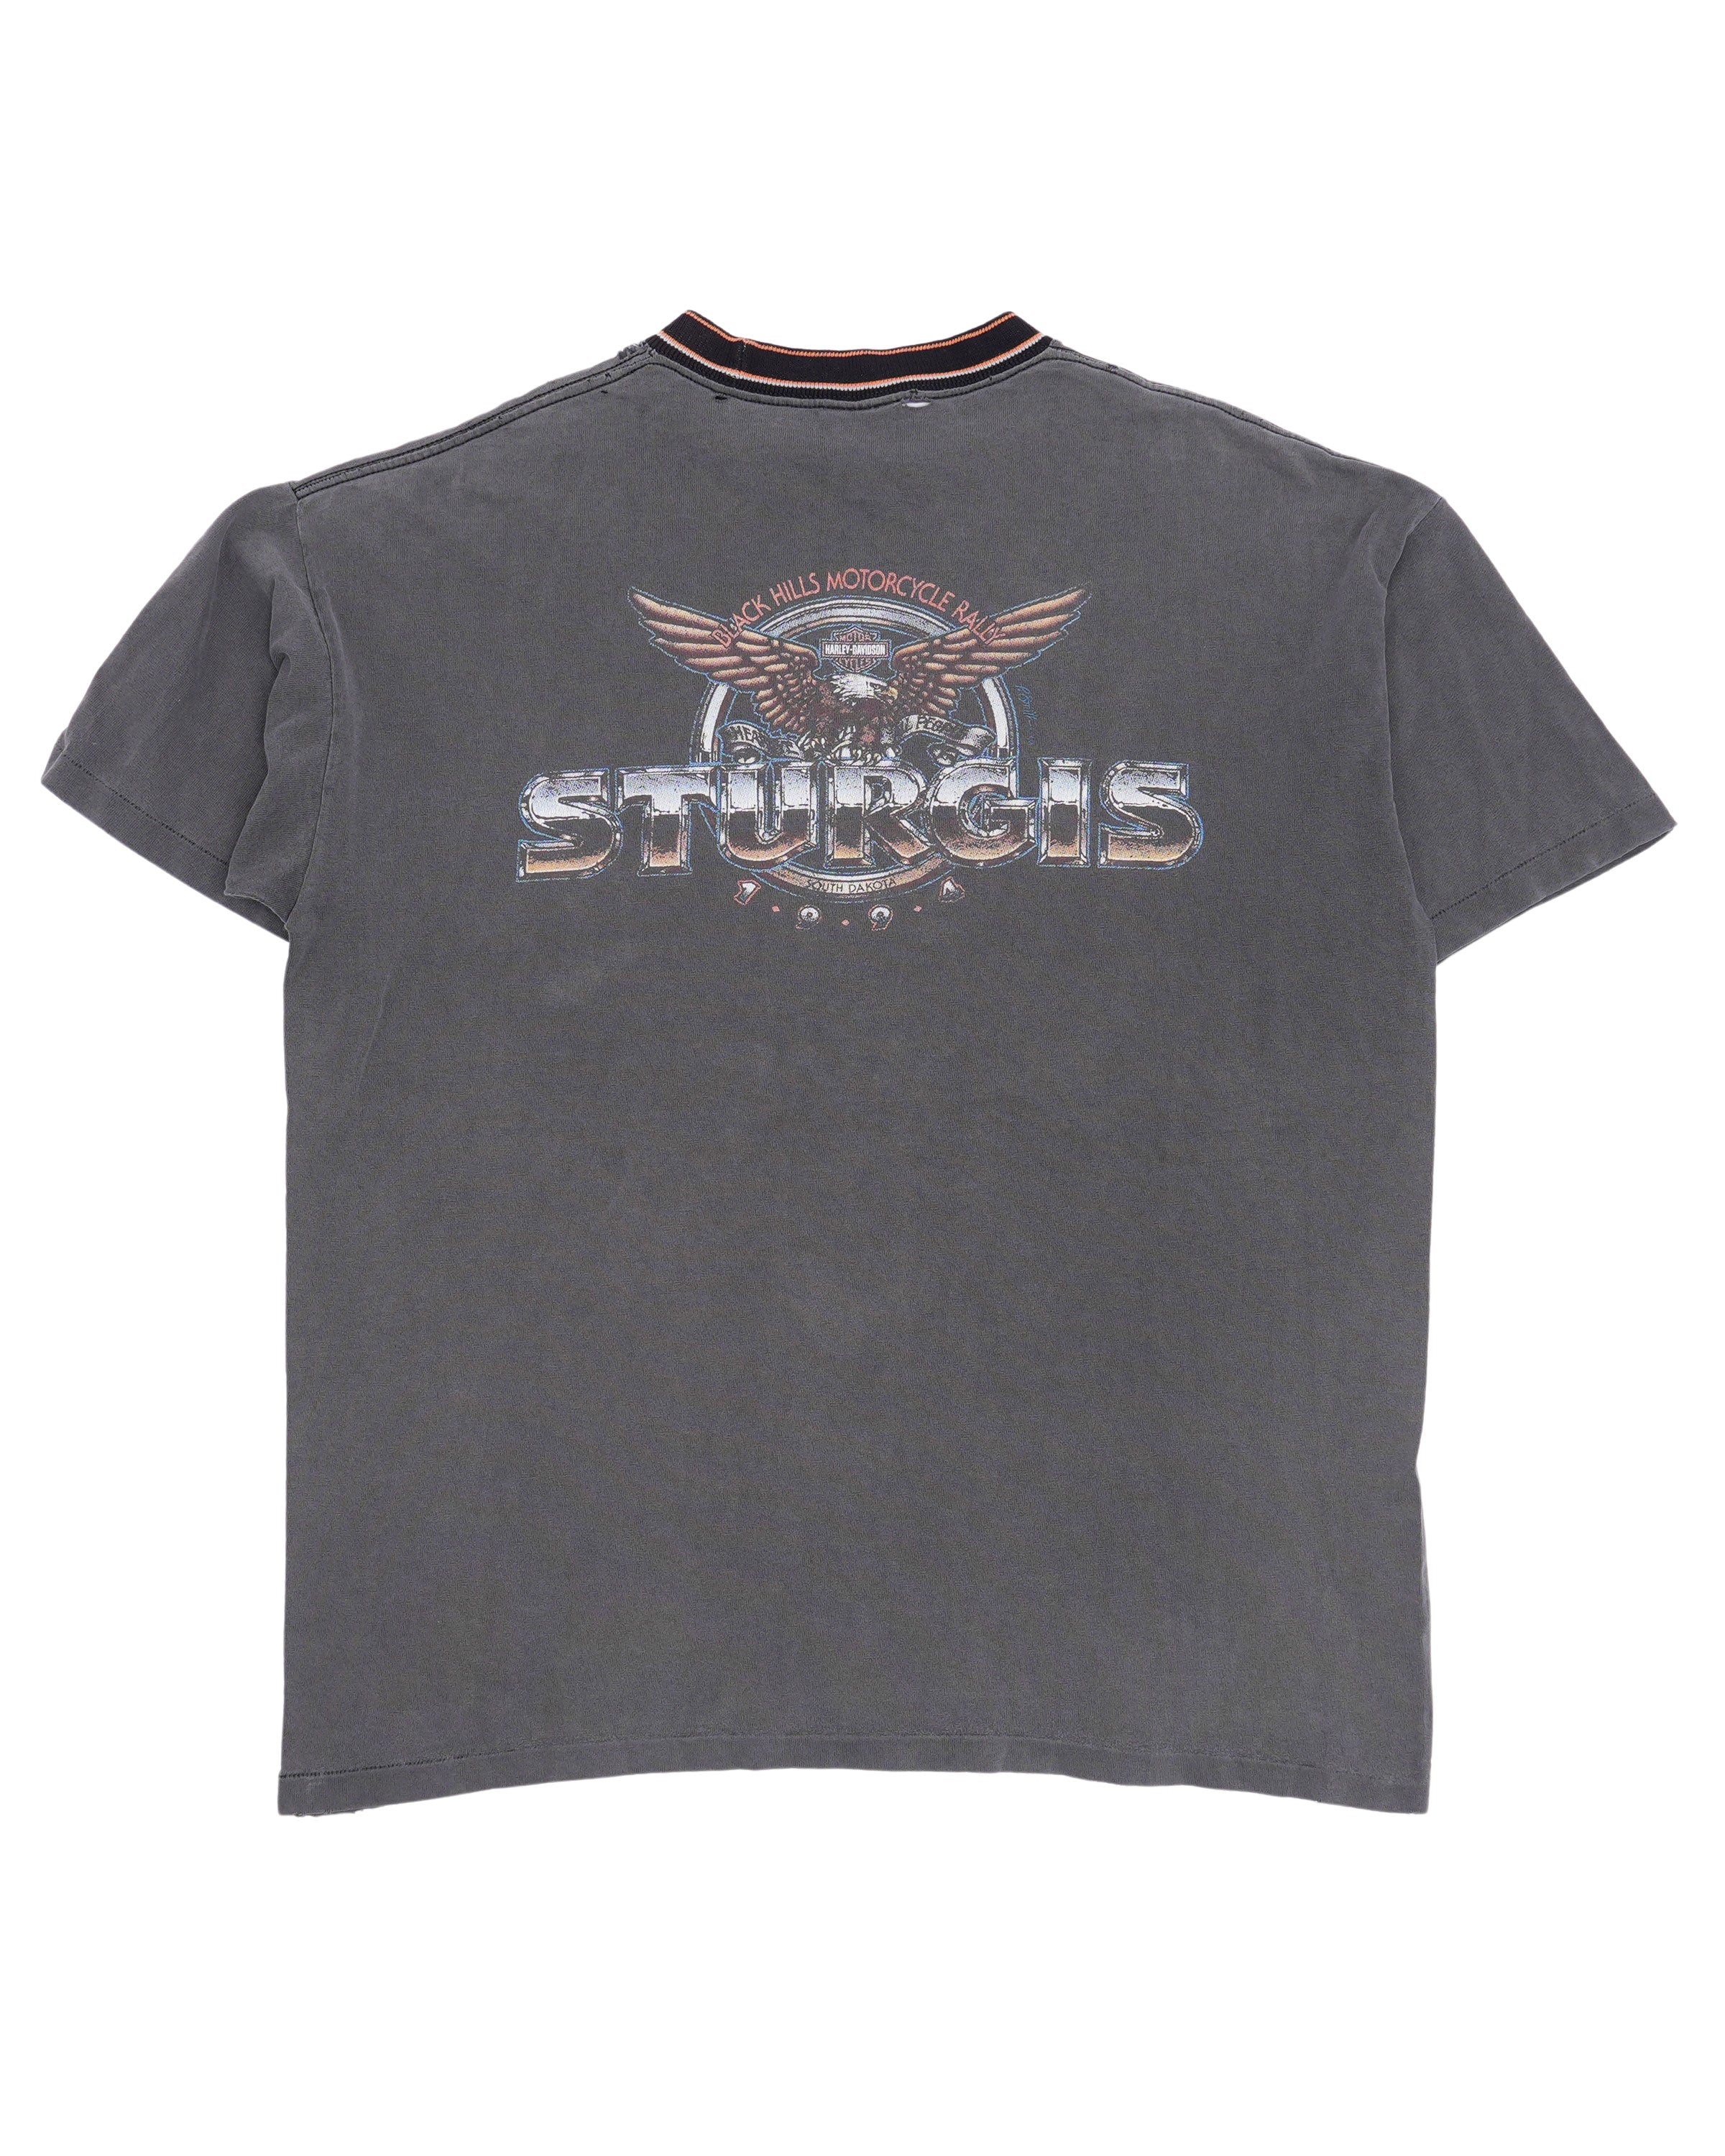 Harley Davidson Sturgis 1994 T-Shirt